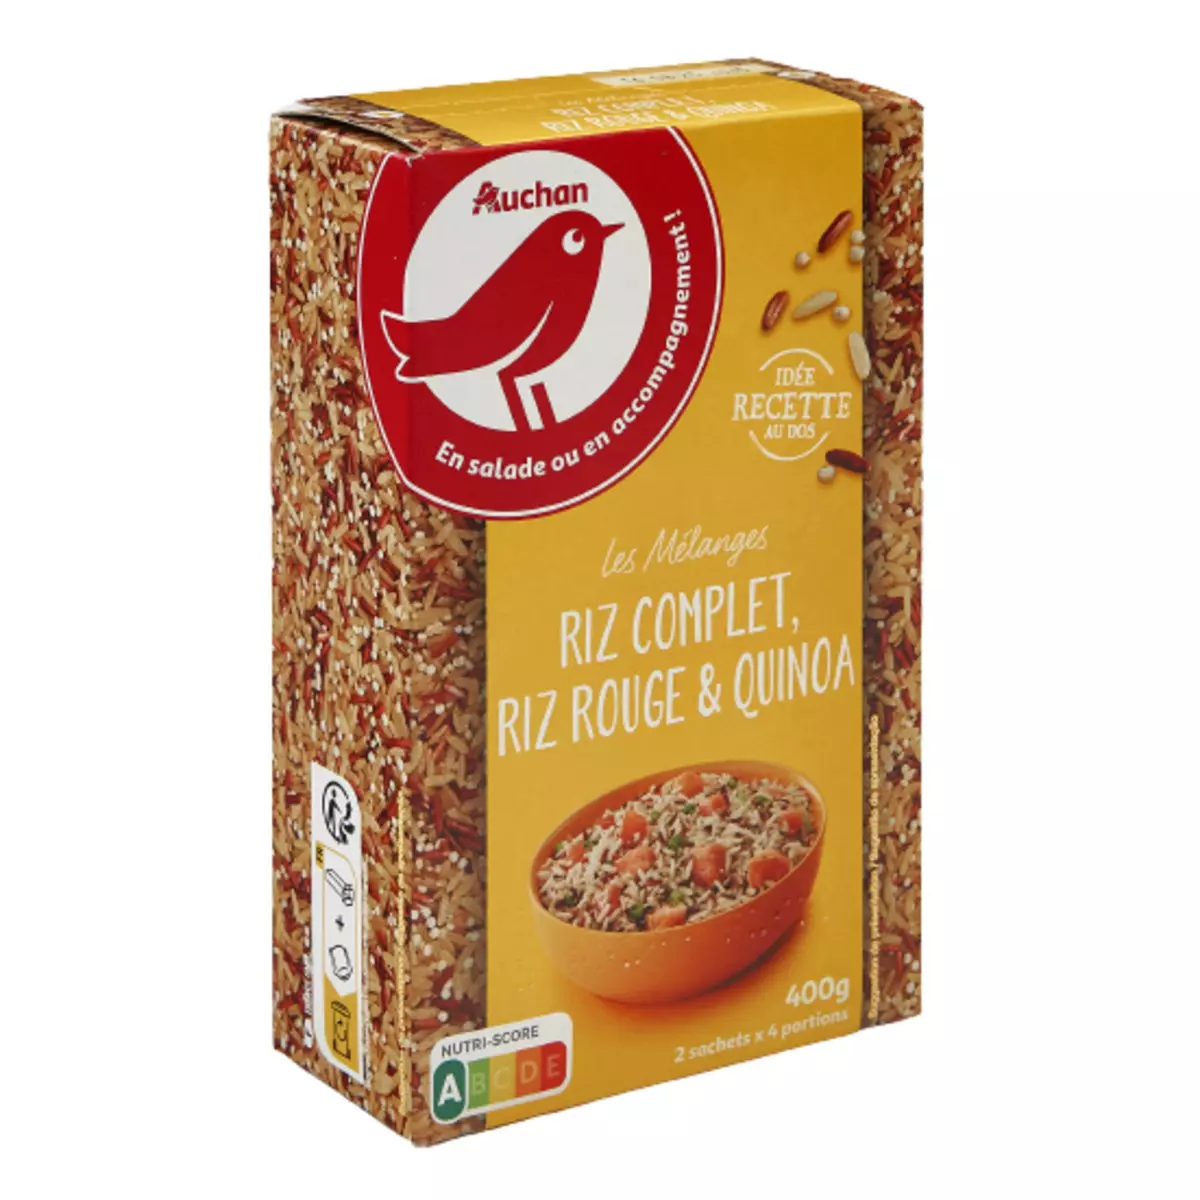 AUCHAN Mélange riz complet riz rouge quinoa prêt en 10 min 2X4 personnes 400g